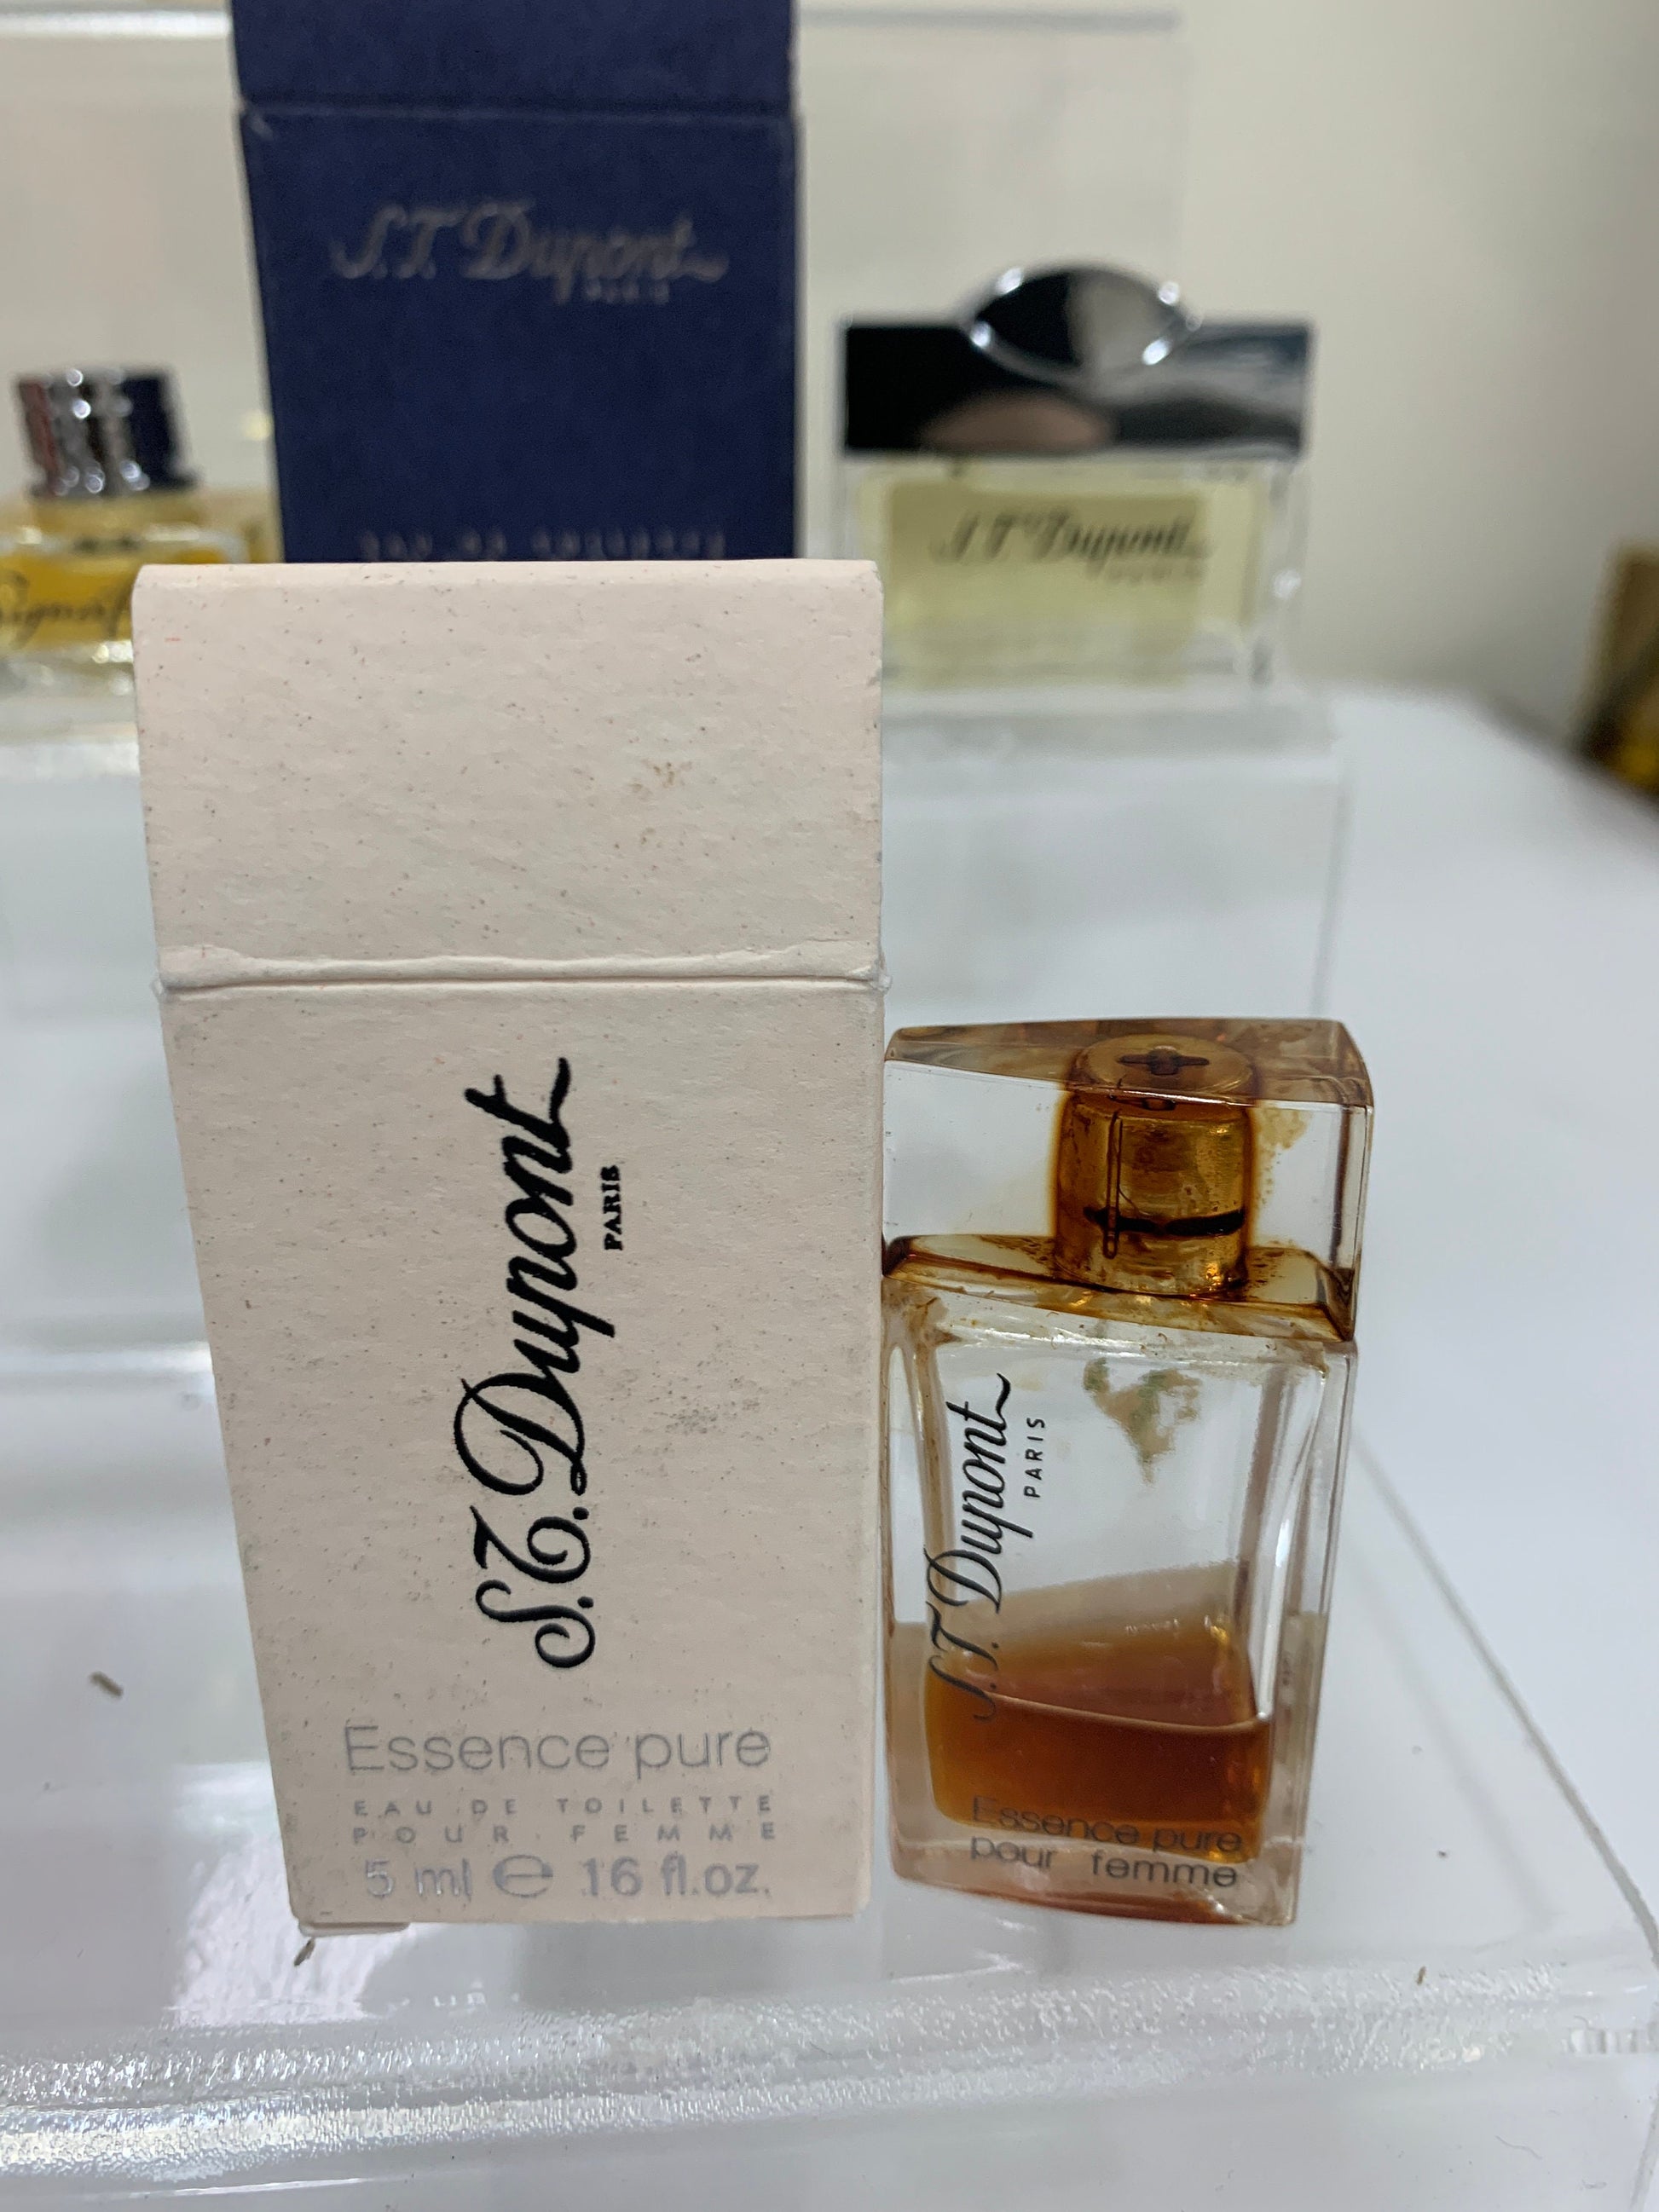 S. T. Dupont 5ml EDT Eau de Toilette Essence Pure 0.17 oz Parfum Perfu –  Trendy Ground